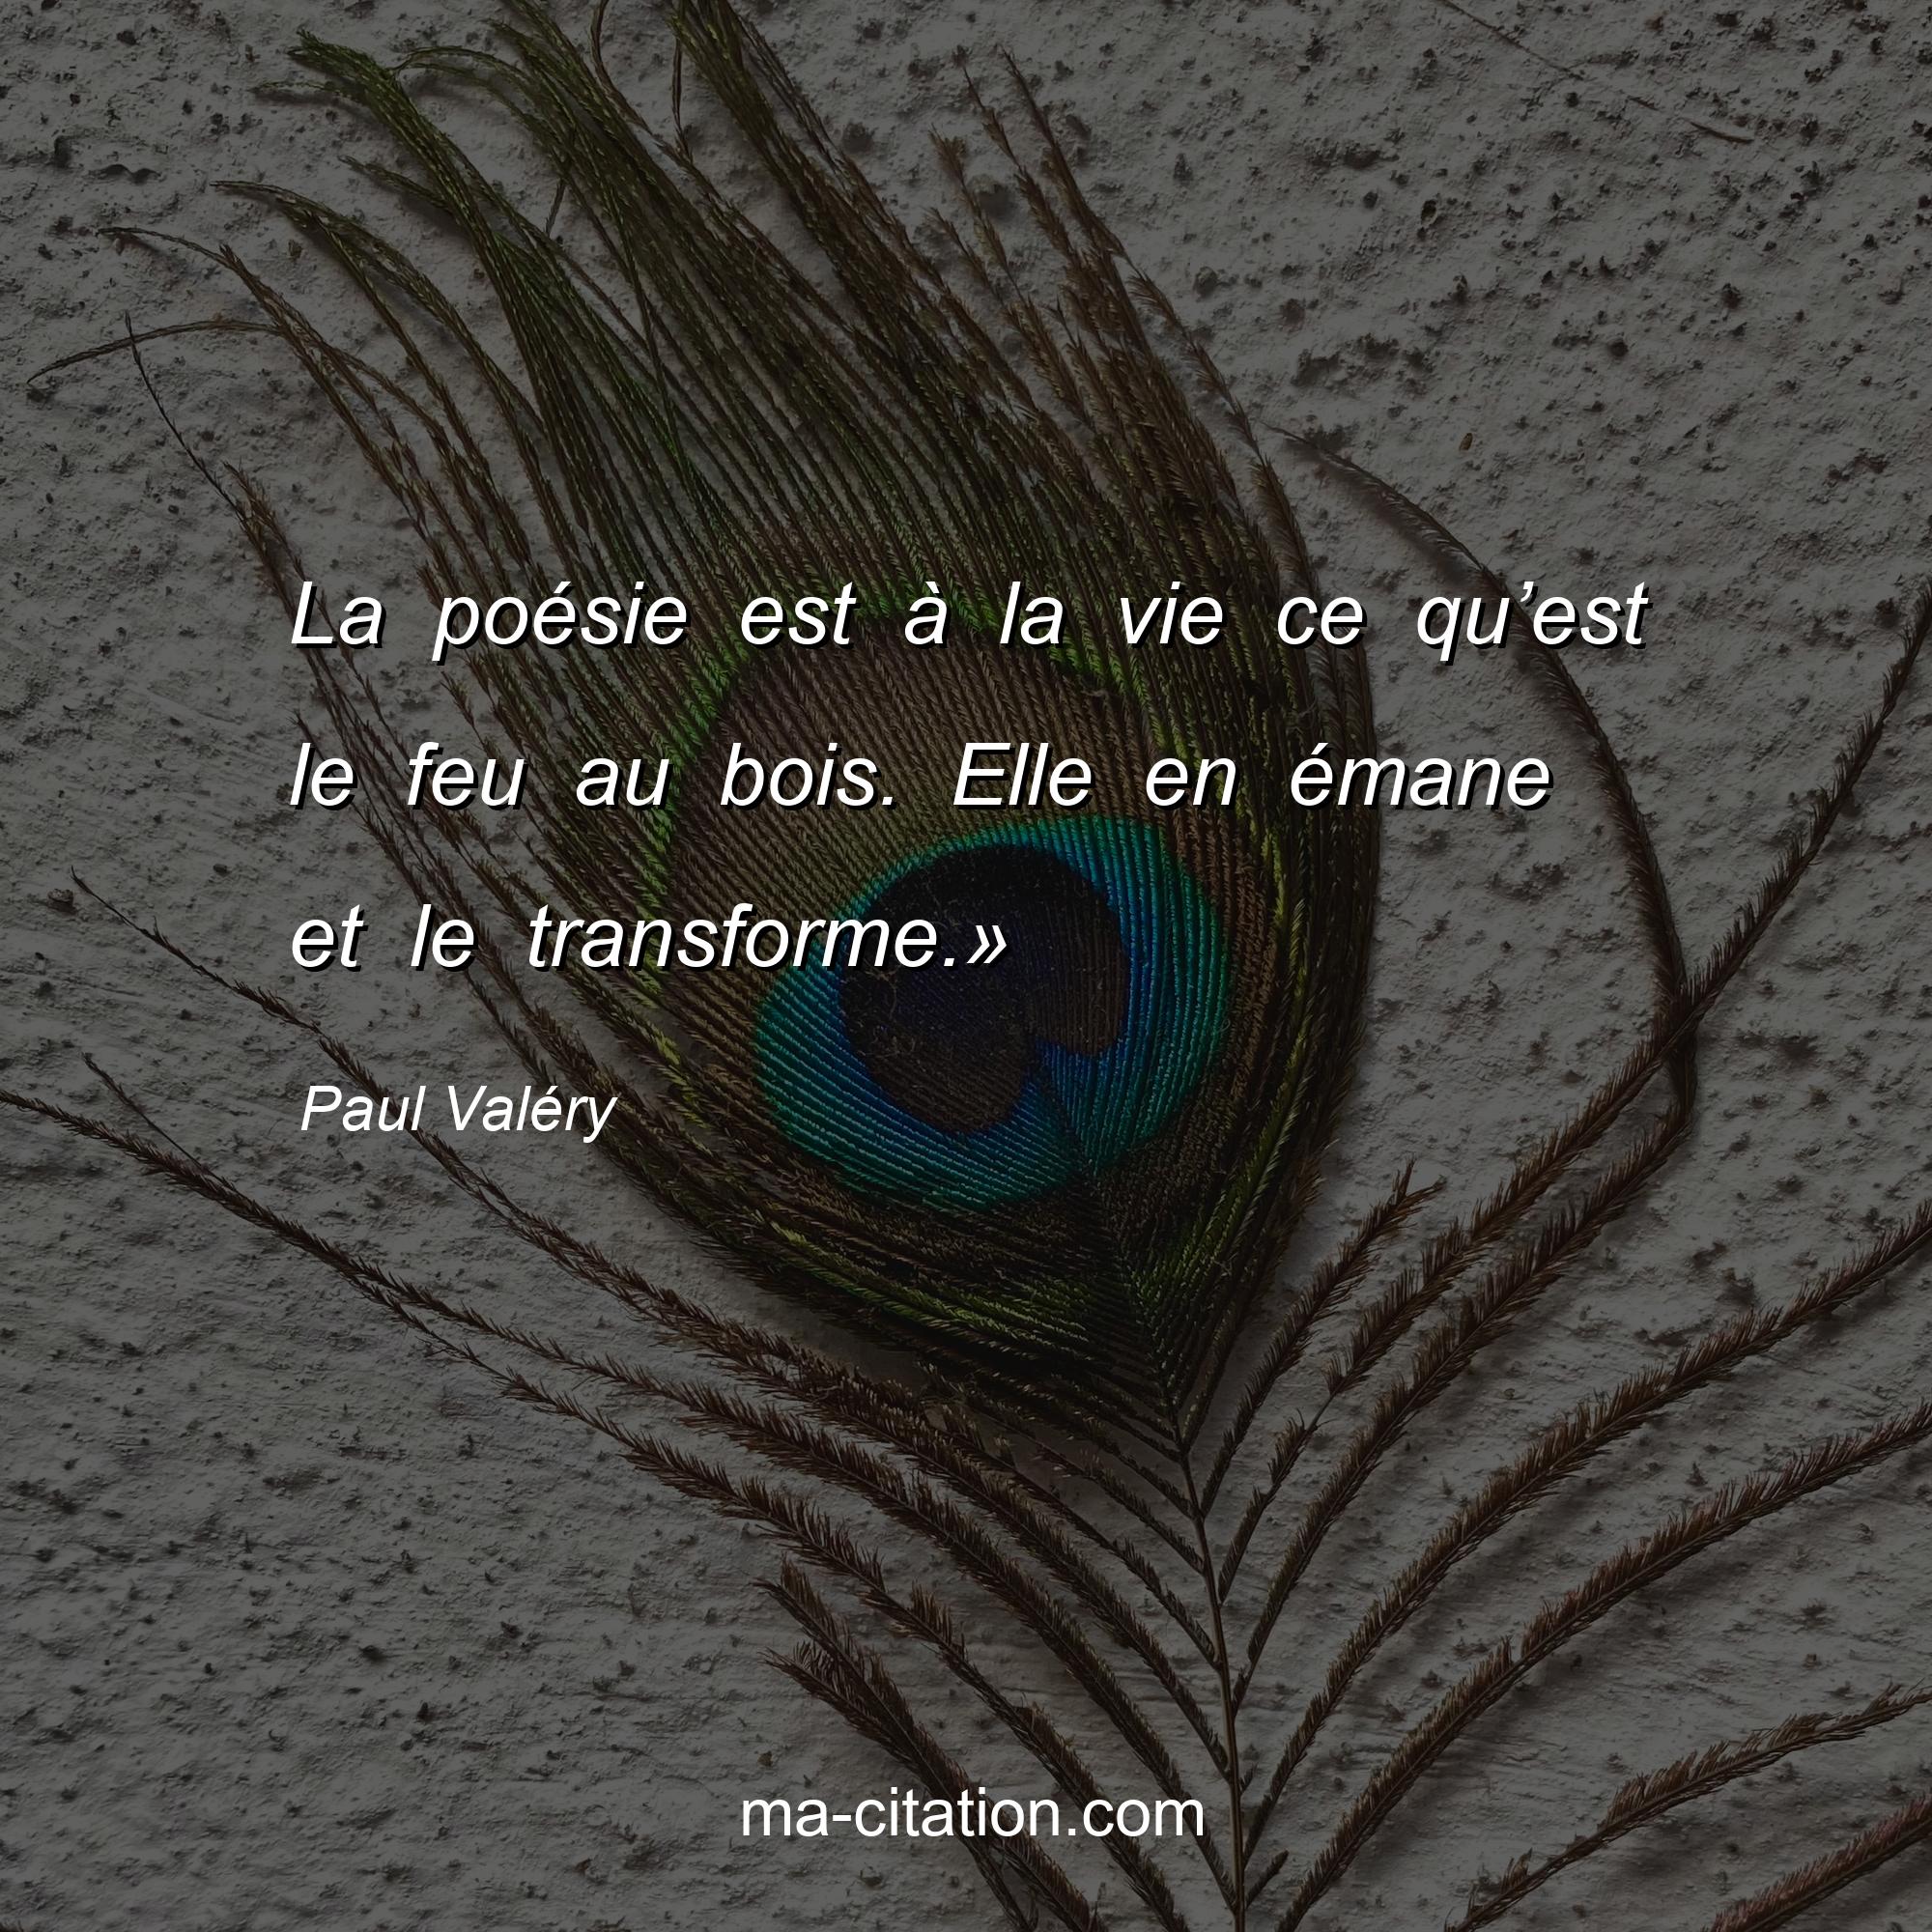 Paul Valéry : La poésie est à la vie ce qu’est le feu au bois. Elle en émane et le transforme.»